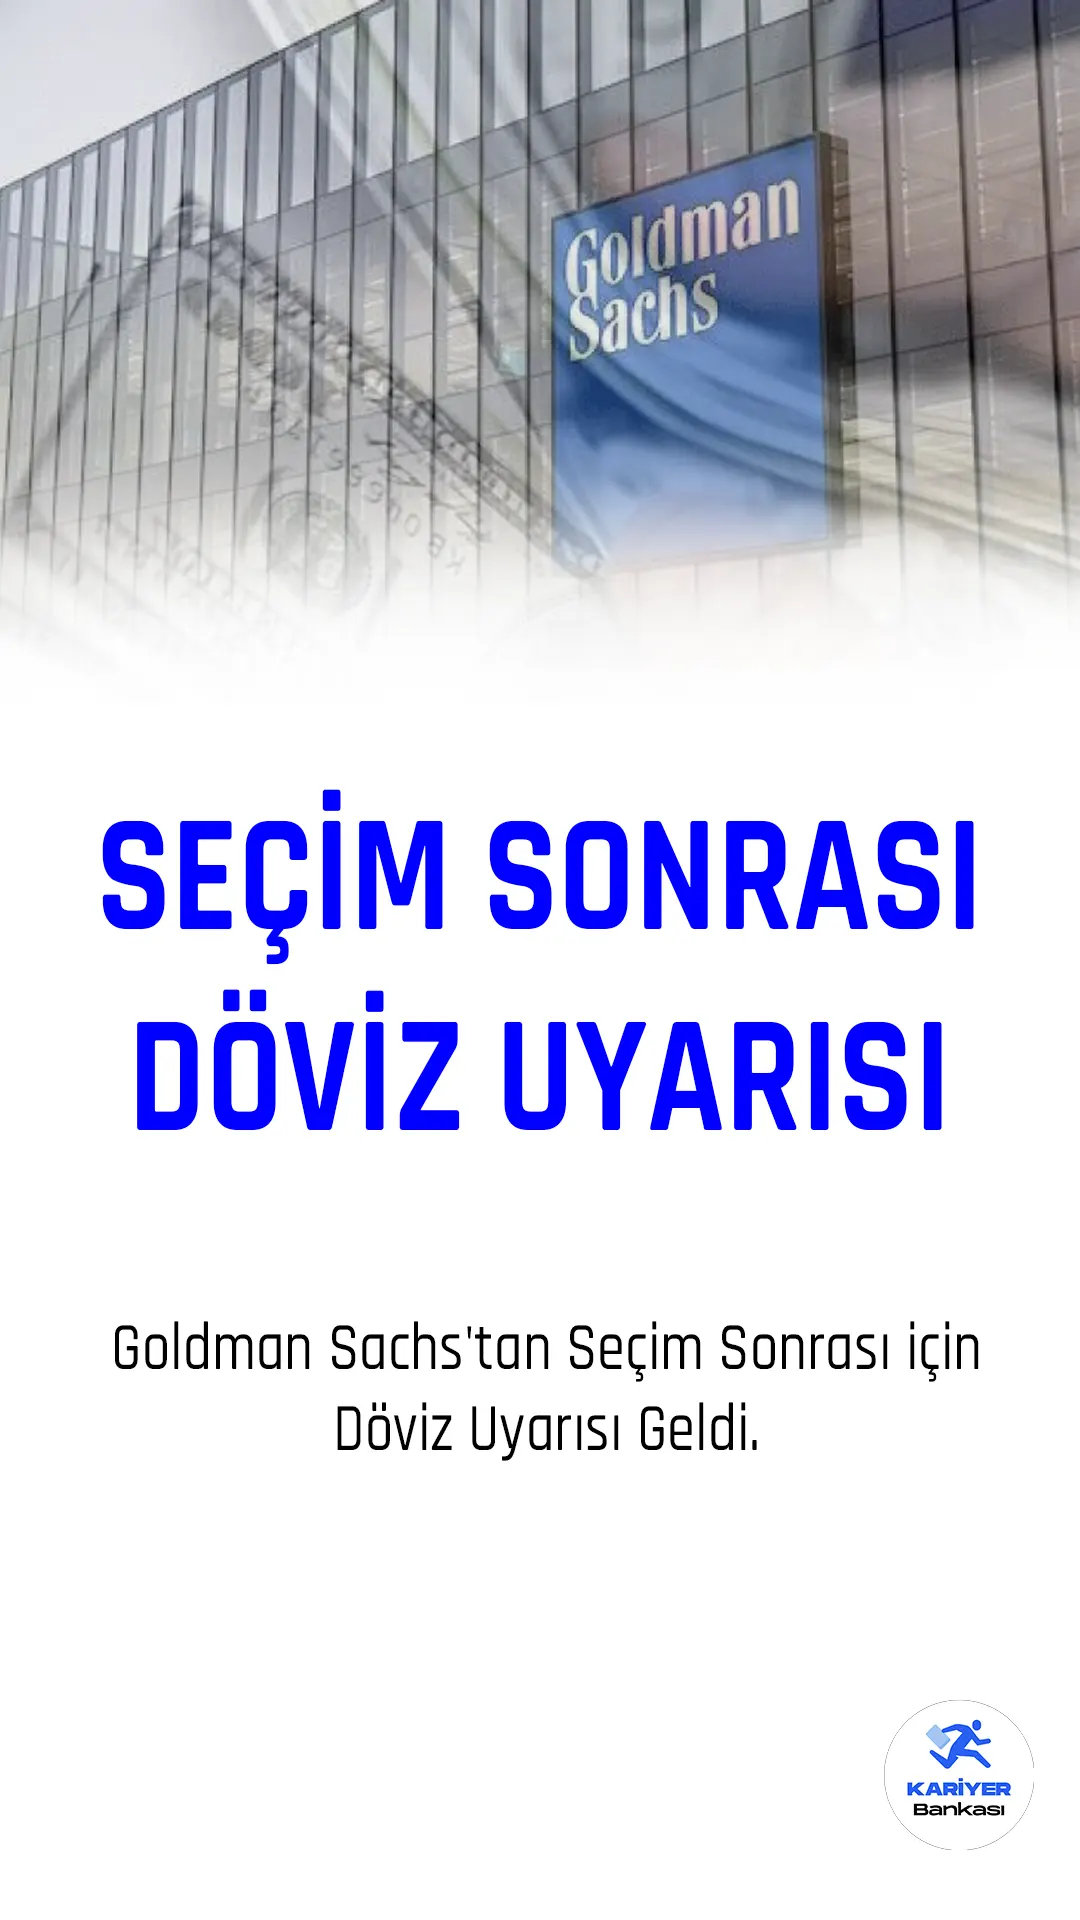 Goldman Sachs, Türkiye'de döviz rezervlerinin azalması sonrasında, dolar/TL kuru sabit tutmak için uygulanan önlemlerin ardından, seçim sonrası döviz kurlarında "istikrarsızlık" yaşanabileceği uyarısında bulundu.